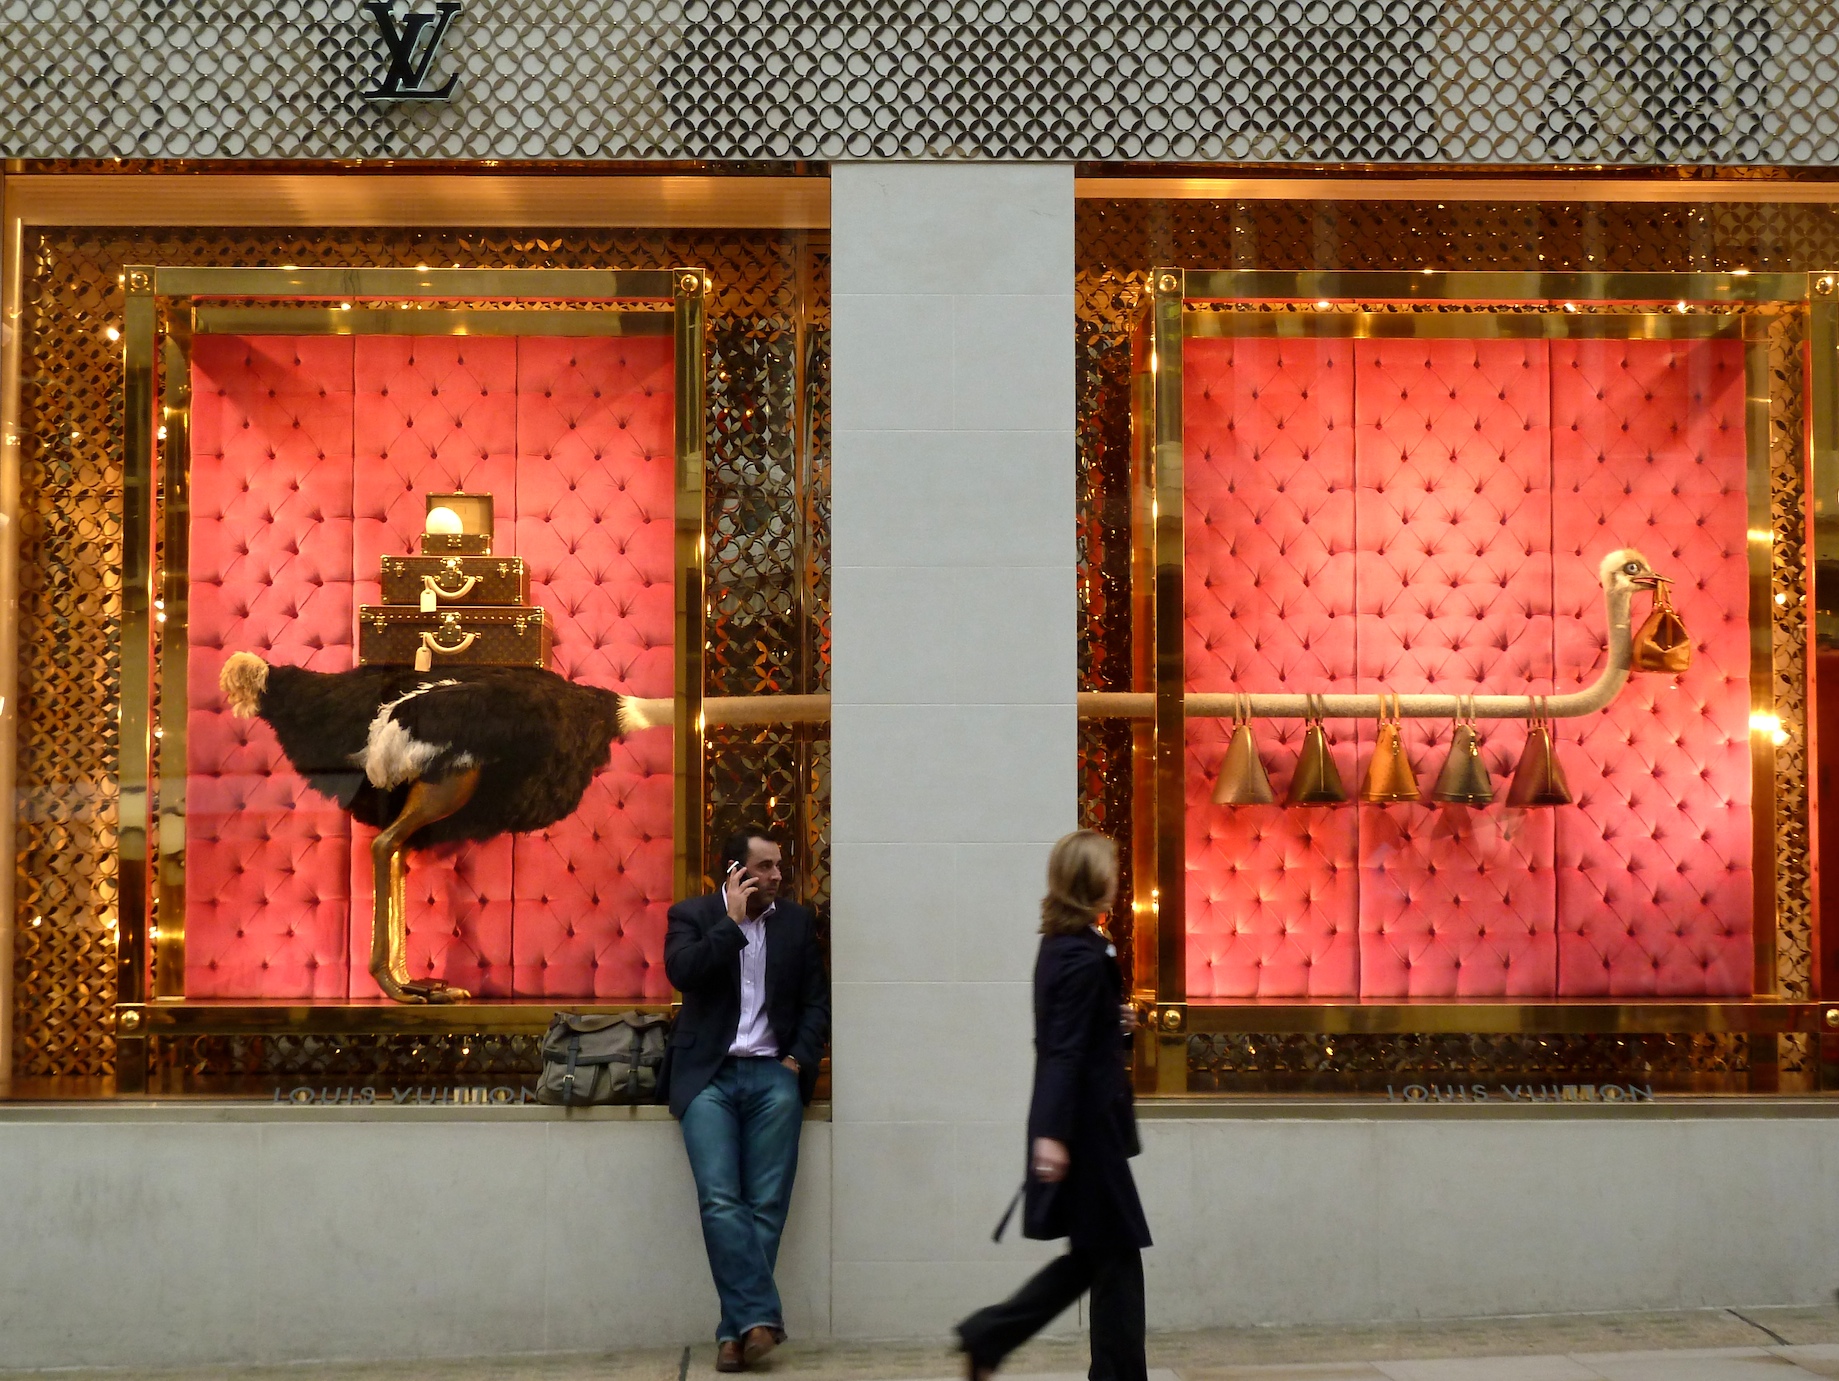 Louis Vuitton – Ostrich Windows, Bond Street New York